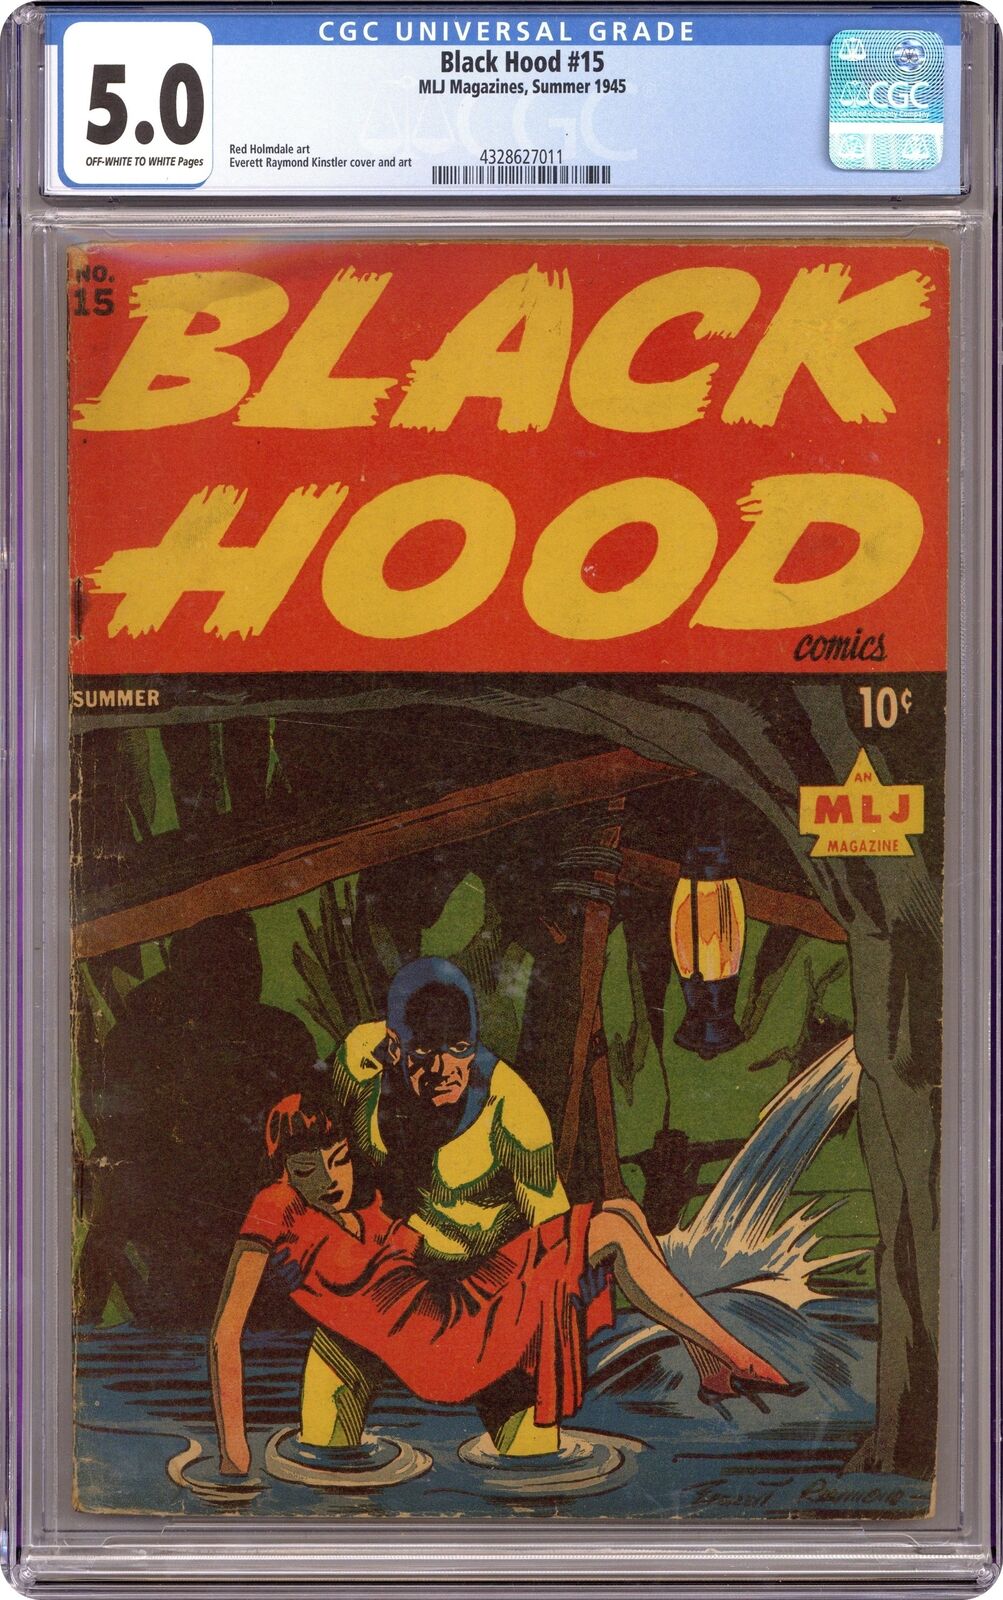 Black Hood Comics #15 CGC 5.0 1945 4328627011